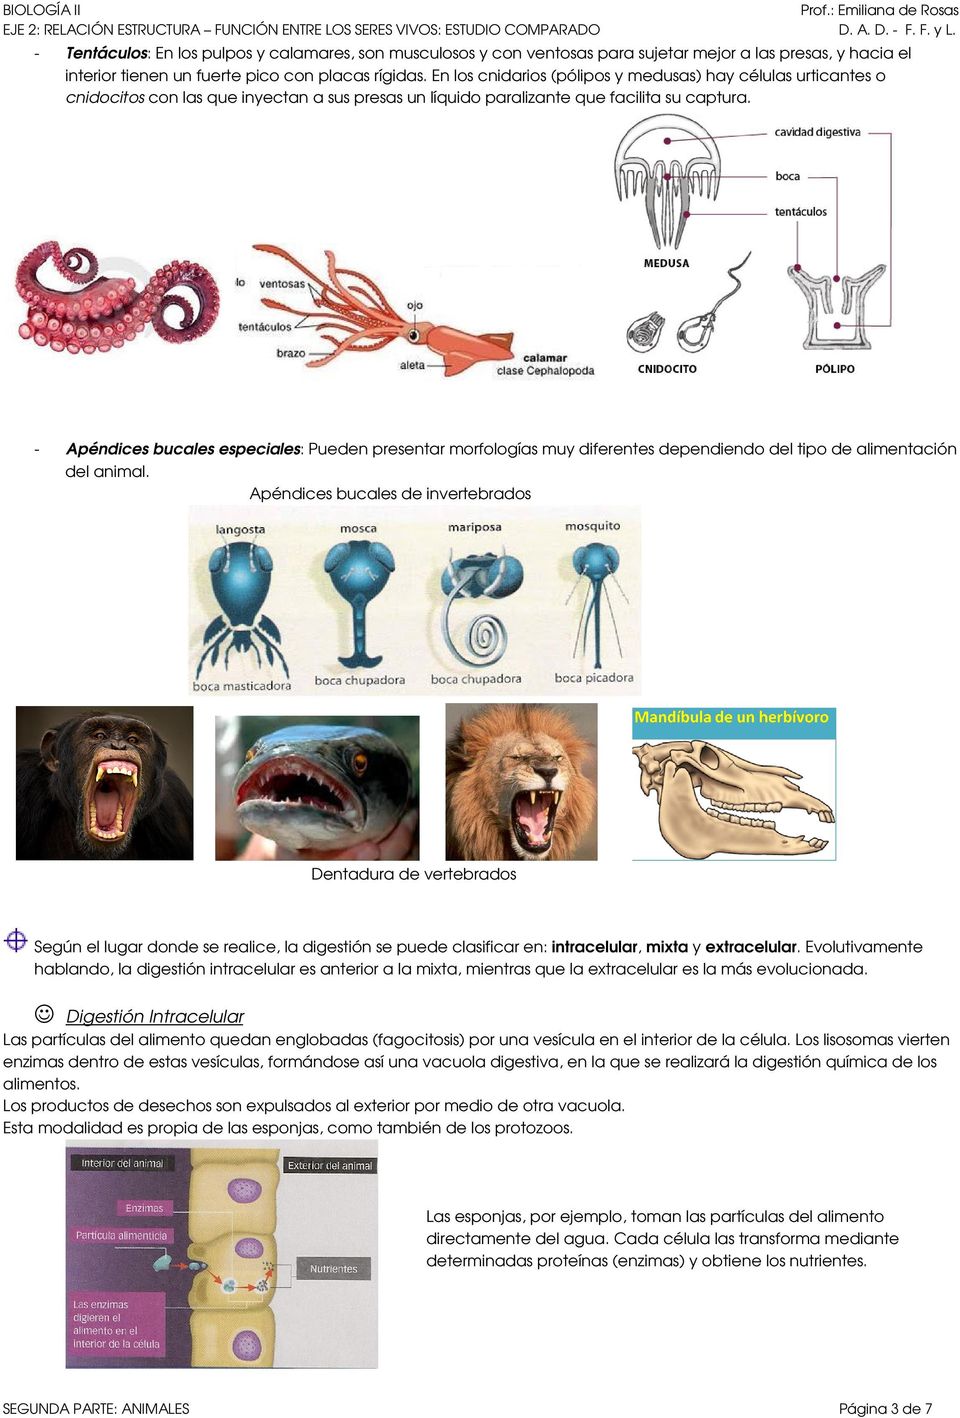 - Apéndices bucales especiales: Pueden presentar morfologías muy diferentes dependiendo del tipo de alimentación del animal.